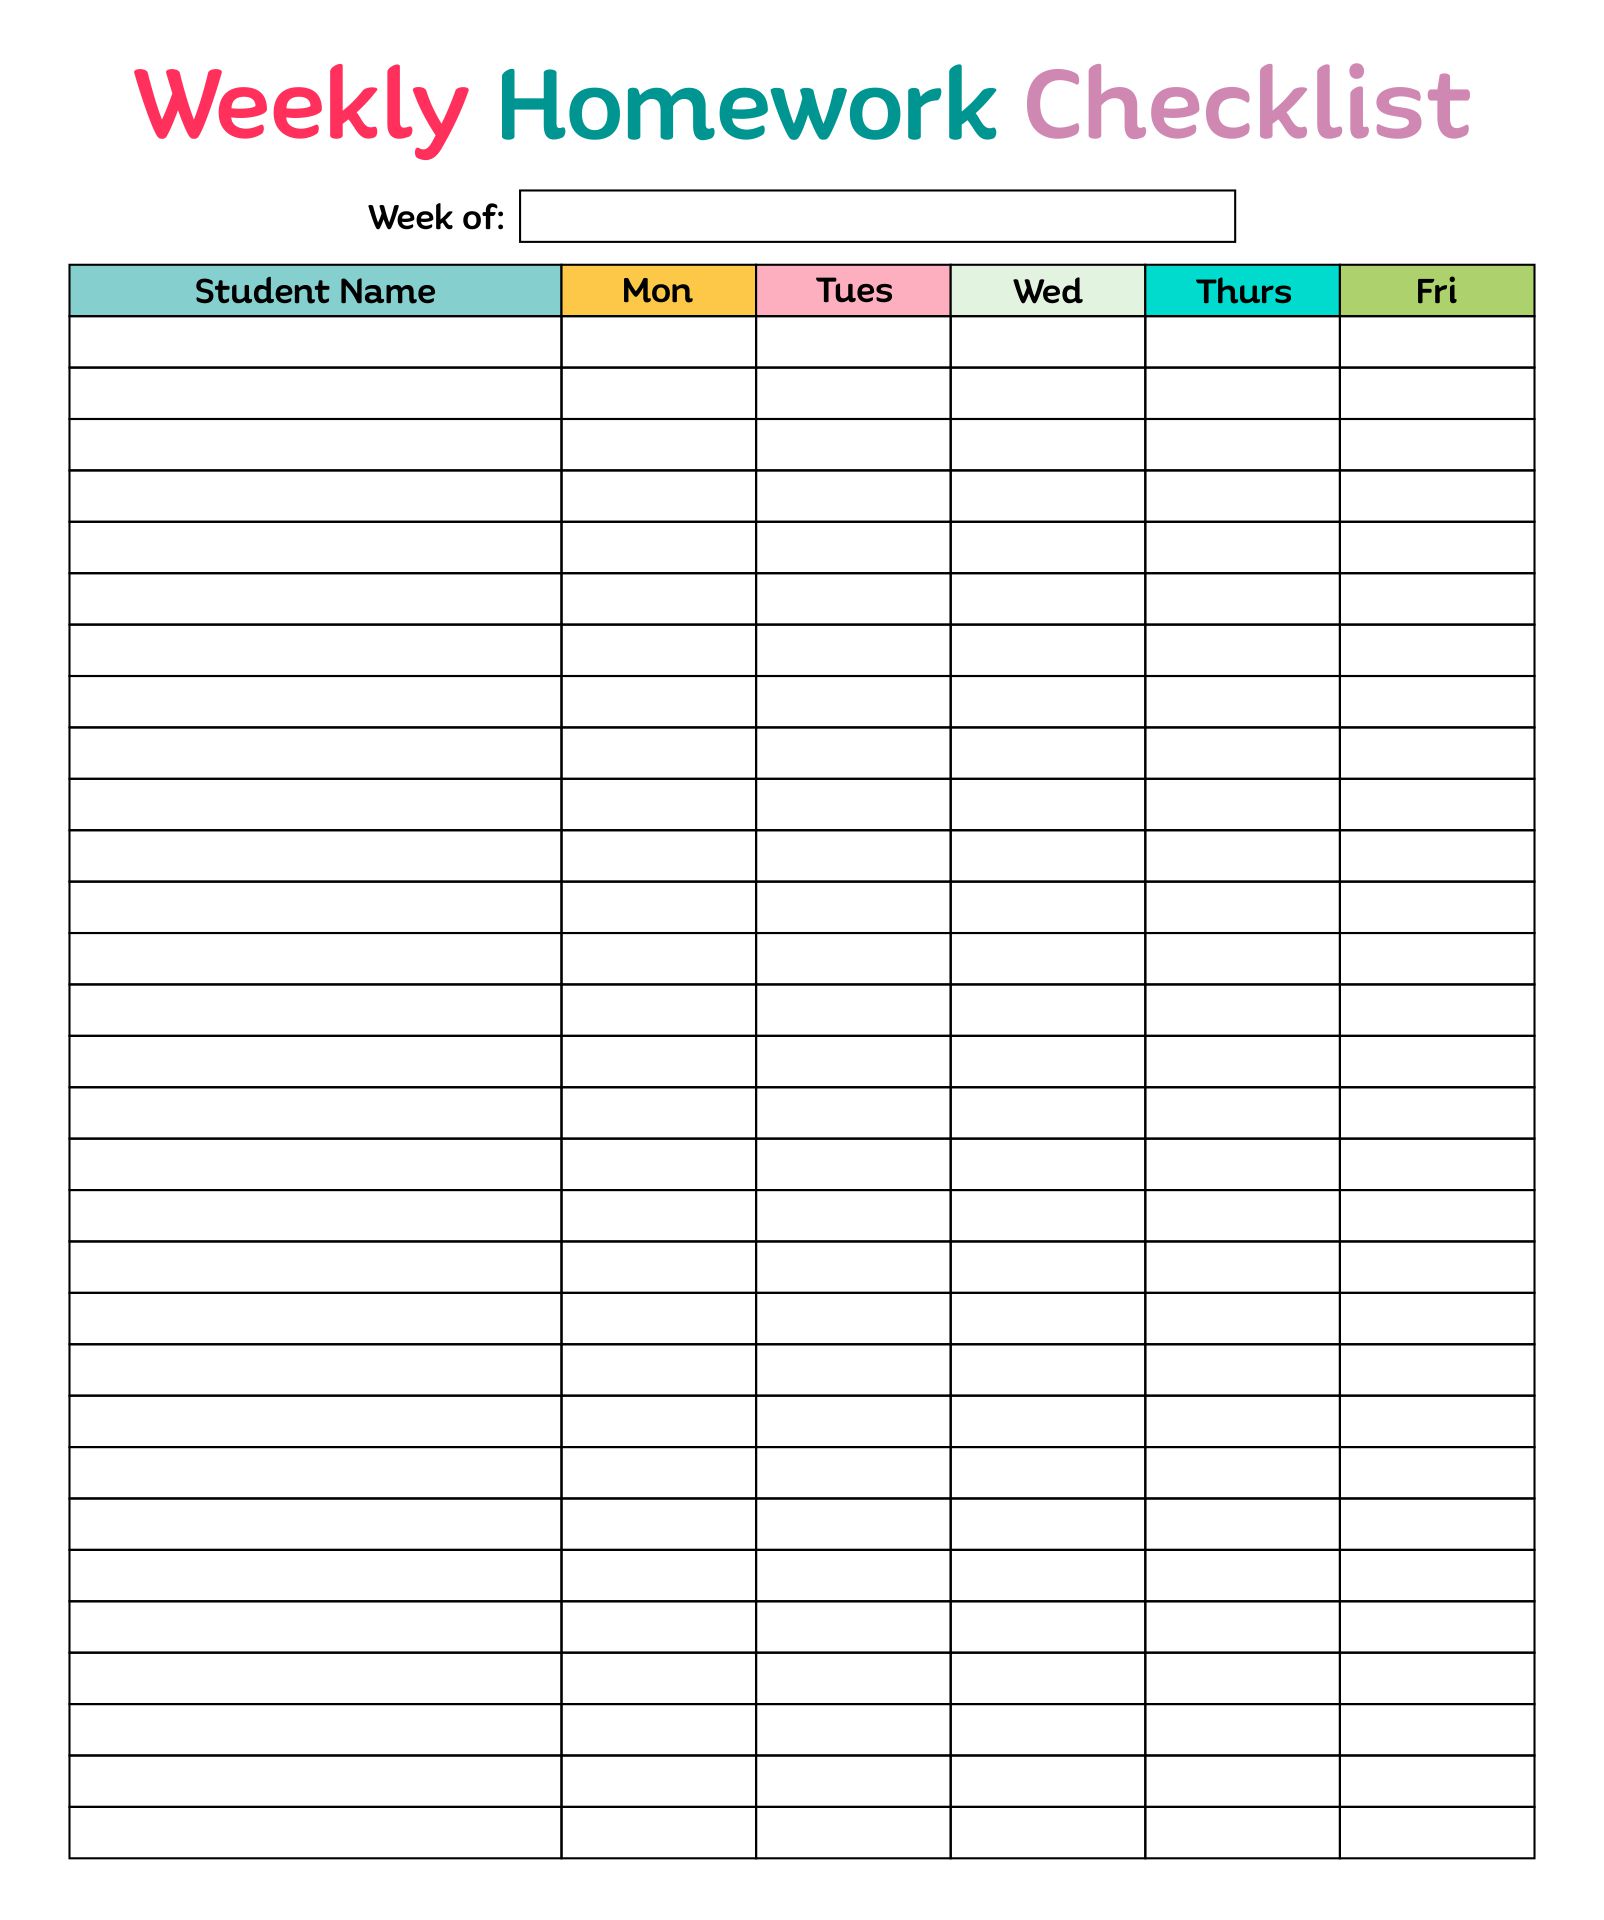 homework checklist online